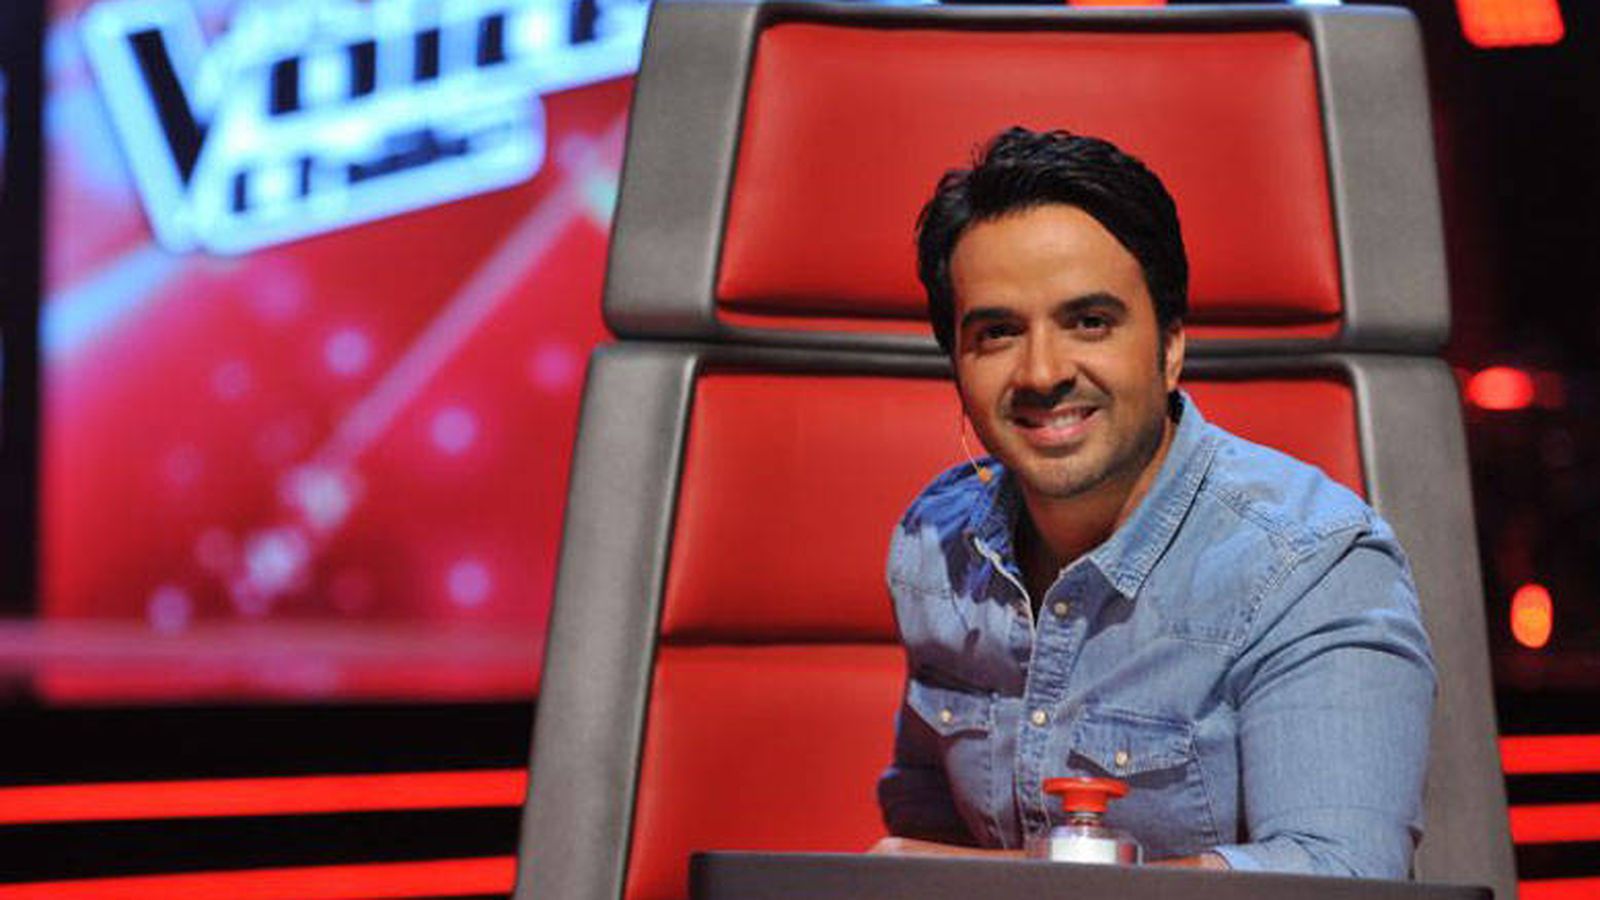 Foto: El cantante Luis Fonsi, en 'The Voice Chile'. (13)